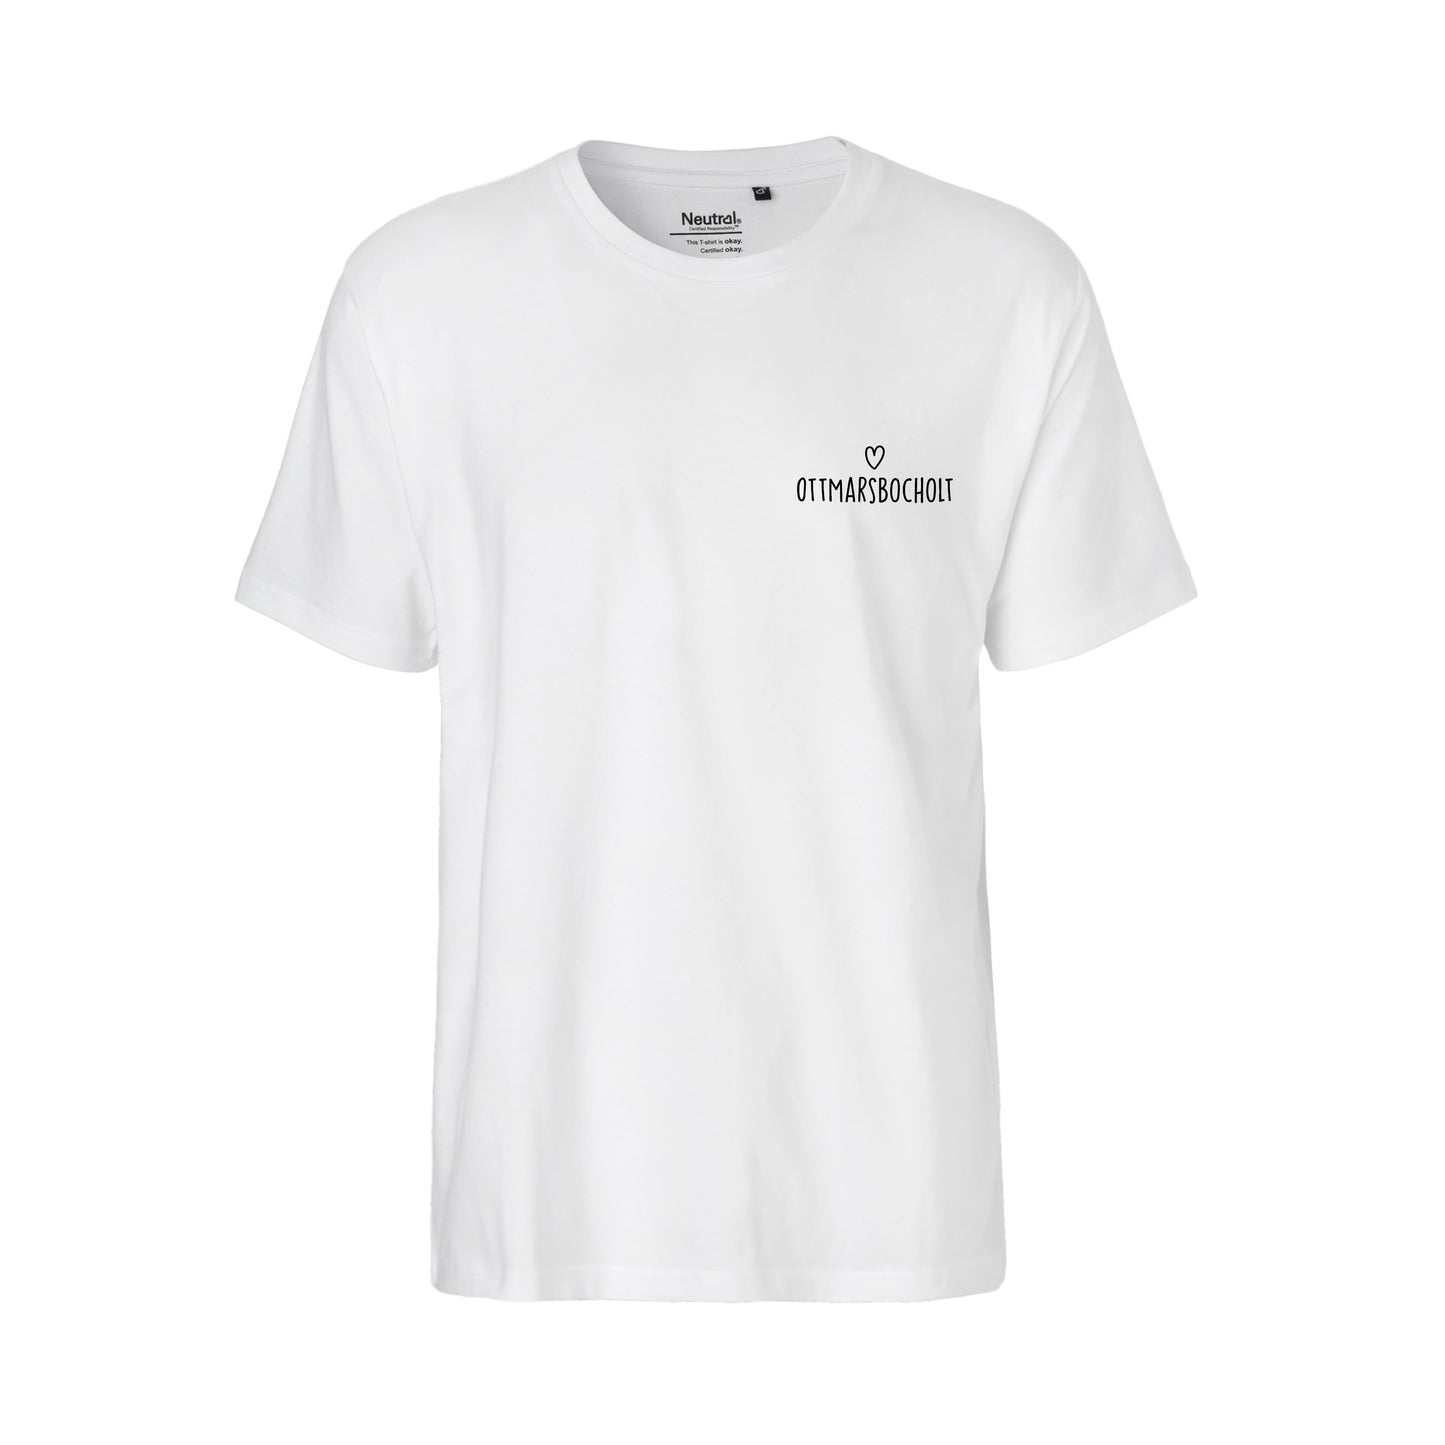 ♂ T-Shirt | Love Ottmarsbocholt